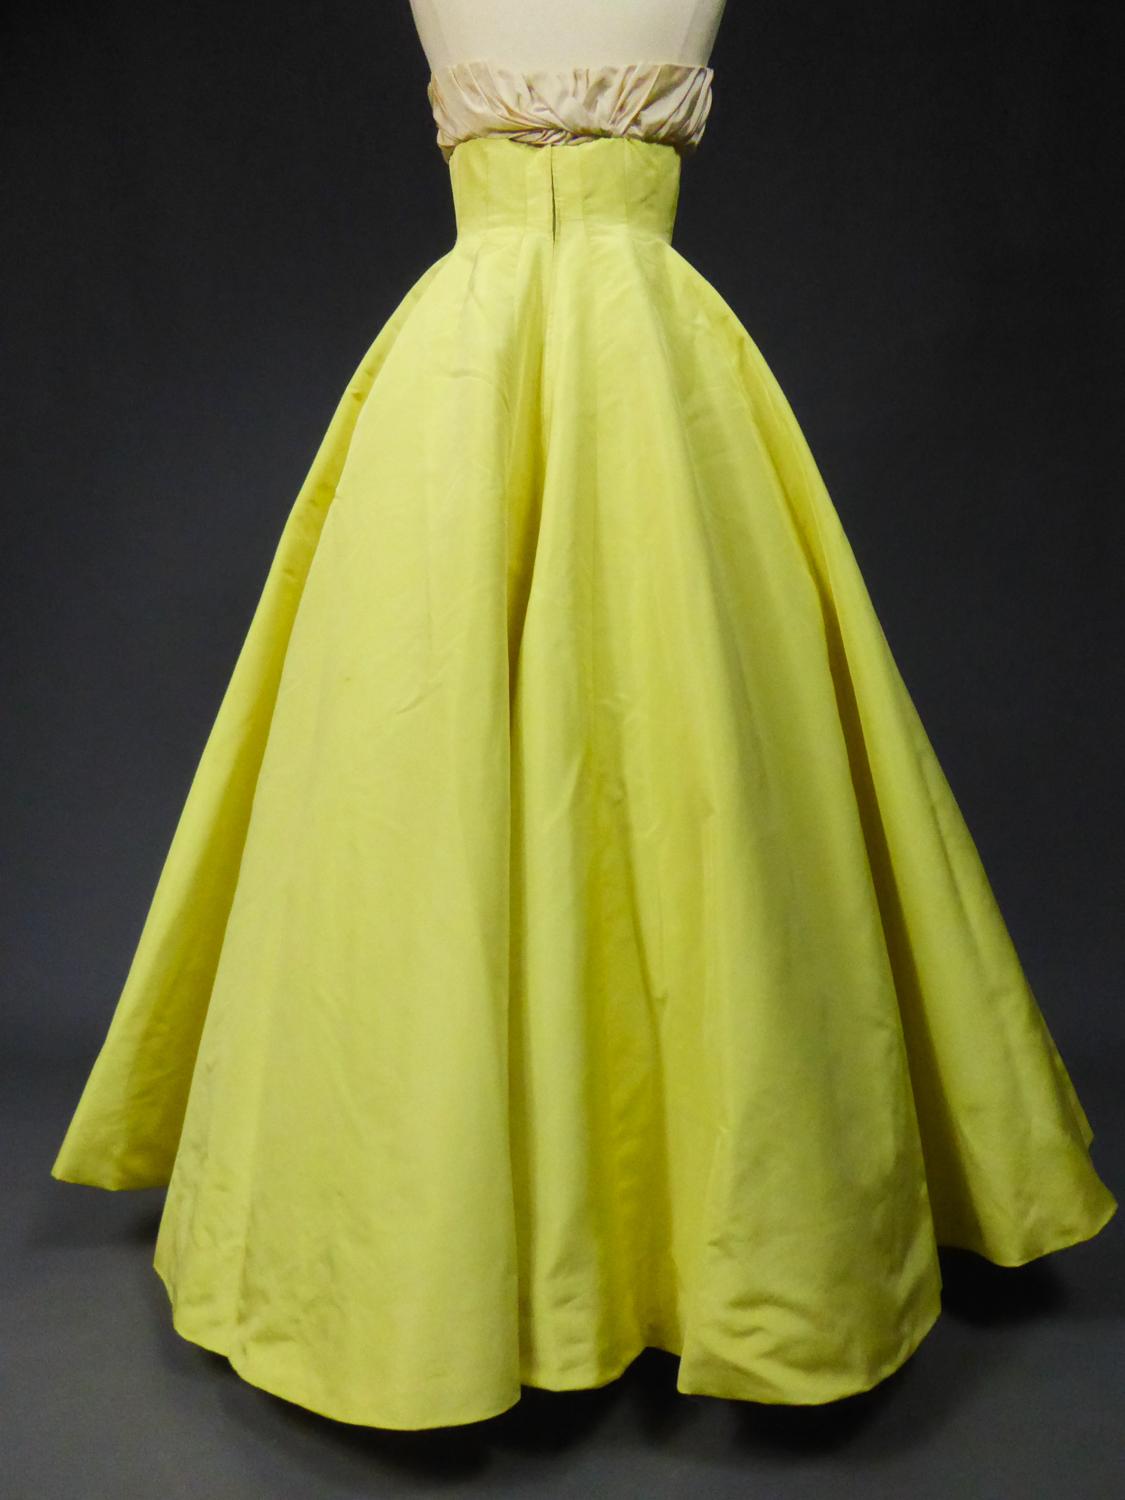 A Pierre Balmain Ottoman Silk Faille Couture Ball-Gown N° 83213 Paris Circa 1958 For Sale 7